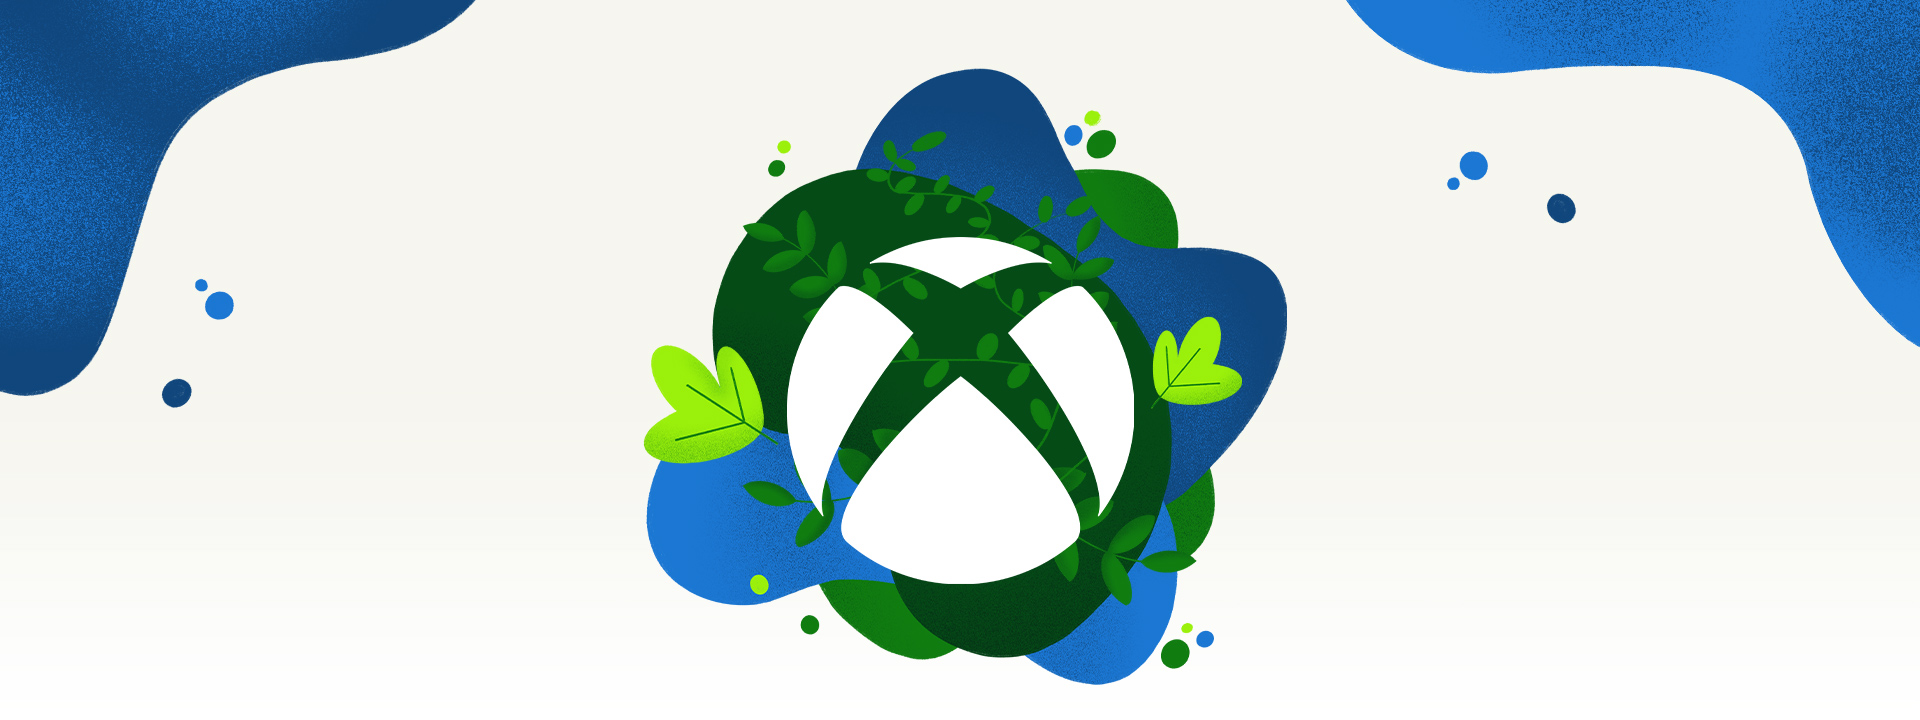 Логотип Xbox в окружении растительности и брызг голубой воды.